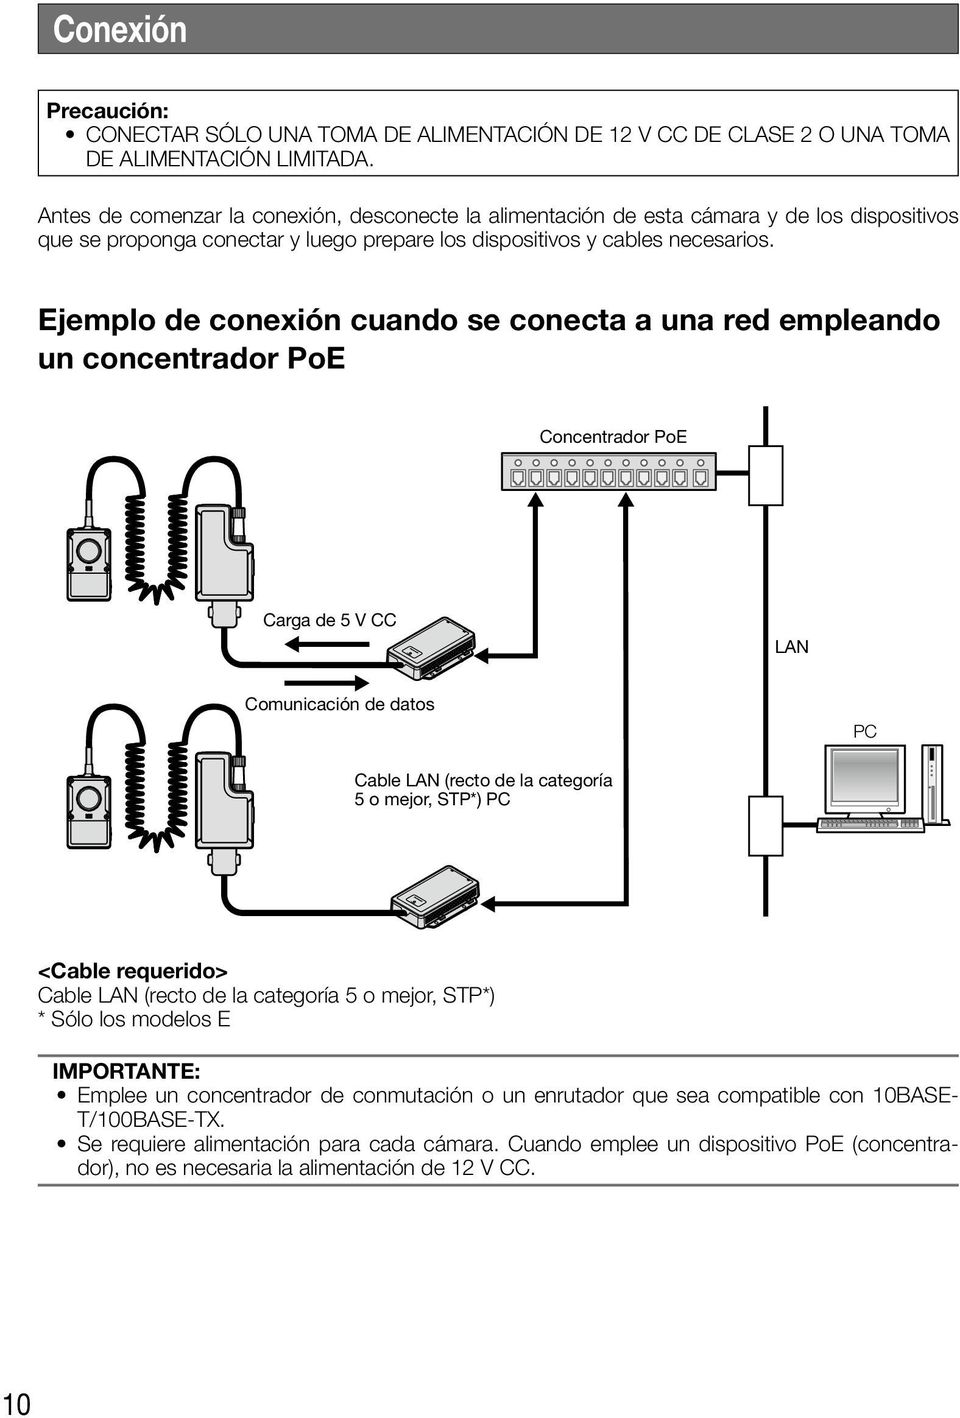 Ejemplo de conexión cuando se conecta a una red empleando un concentrador PoE Concentrador PoE Carga de 5 V CC LAN Comunicación de datos PC Cable LAN (recto de la categoría 5 o mejor, STP*) PC <Cable